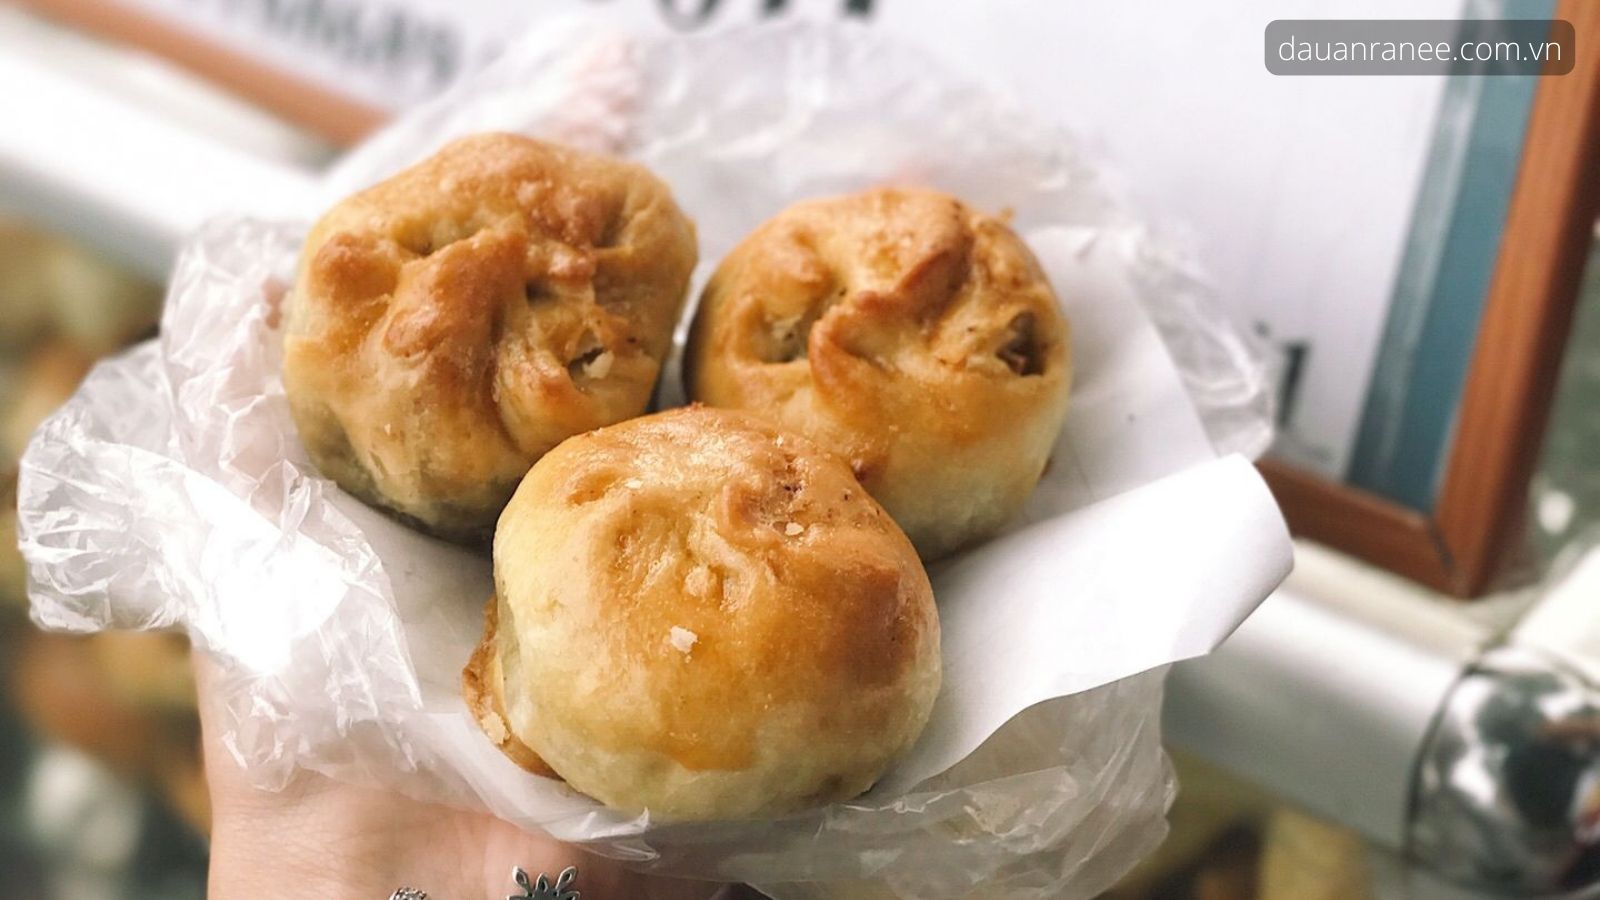 Đặc sản Nam Định – Bánh xíu páo